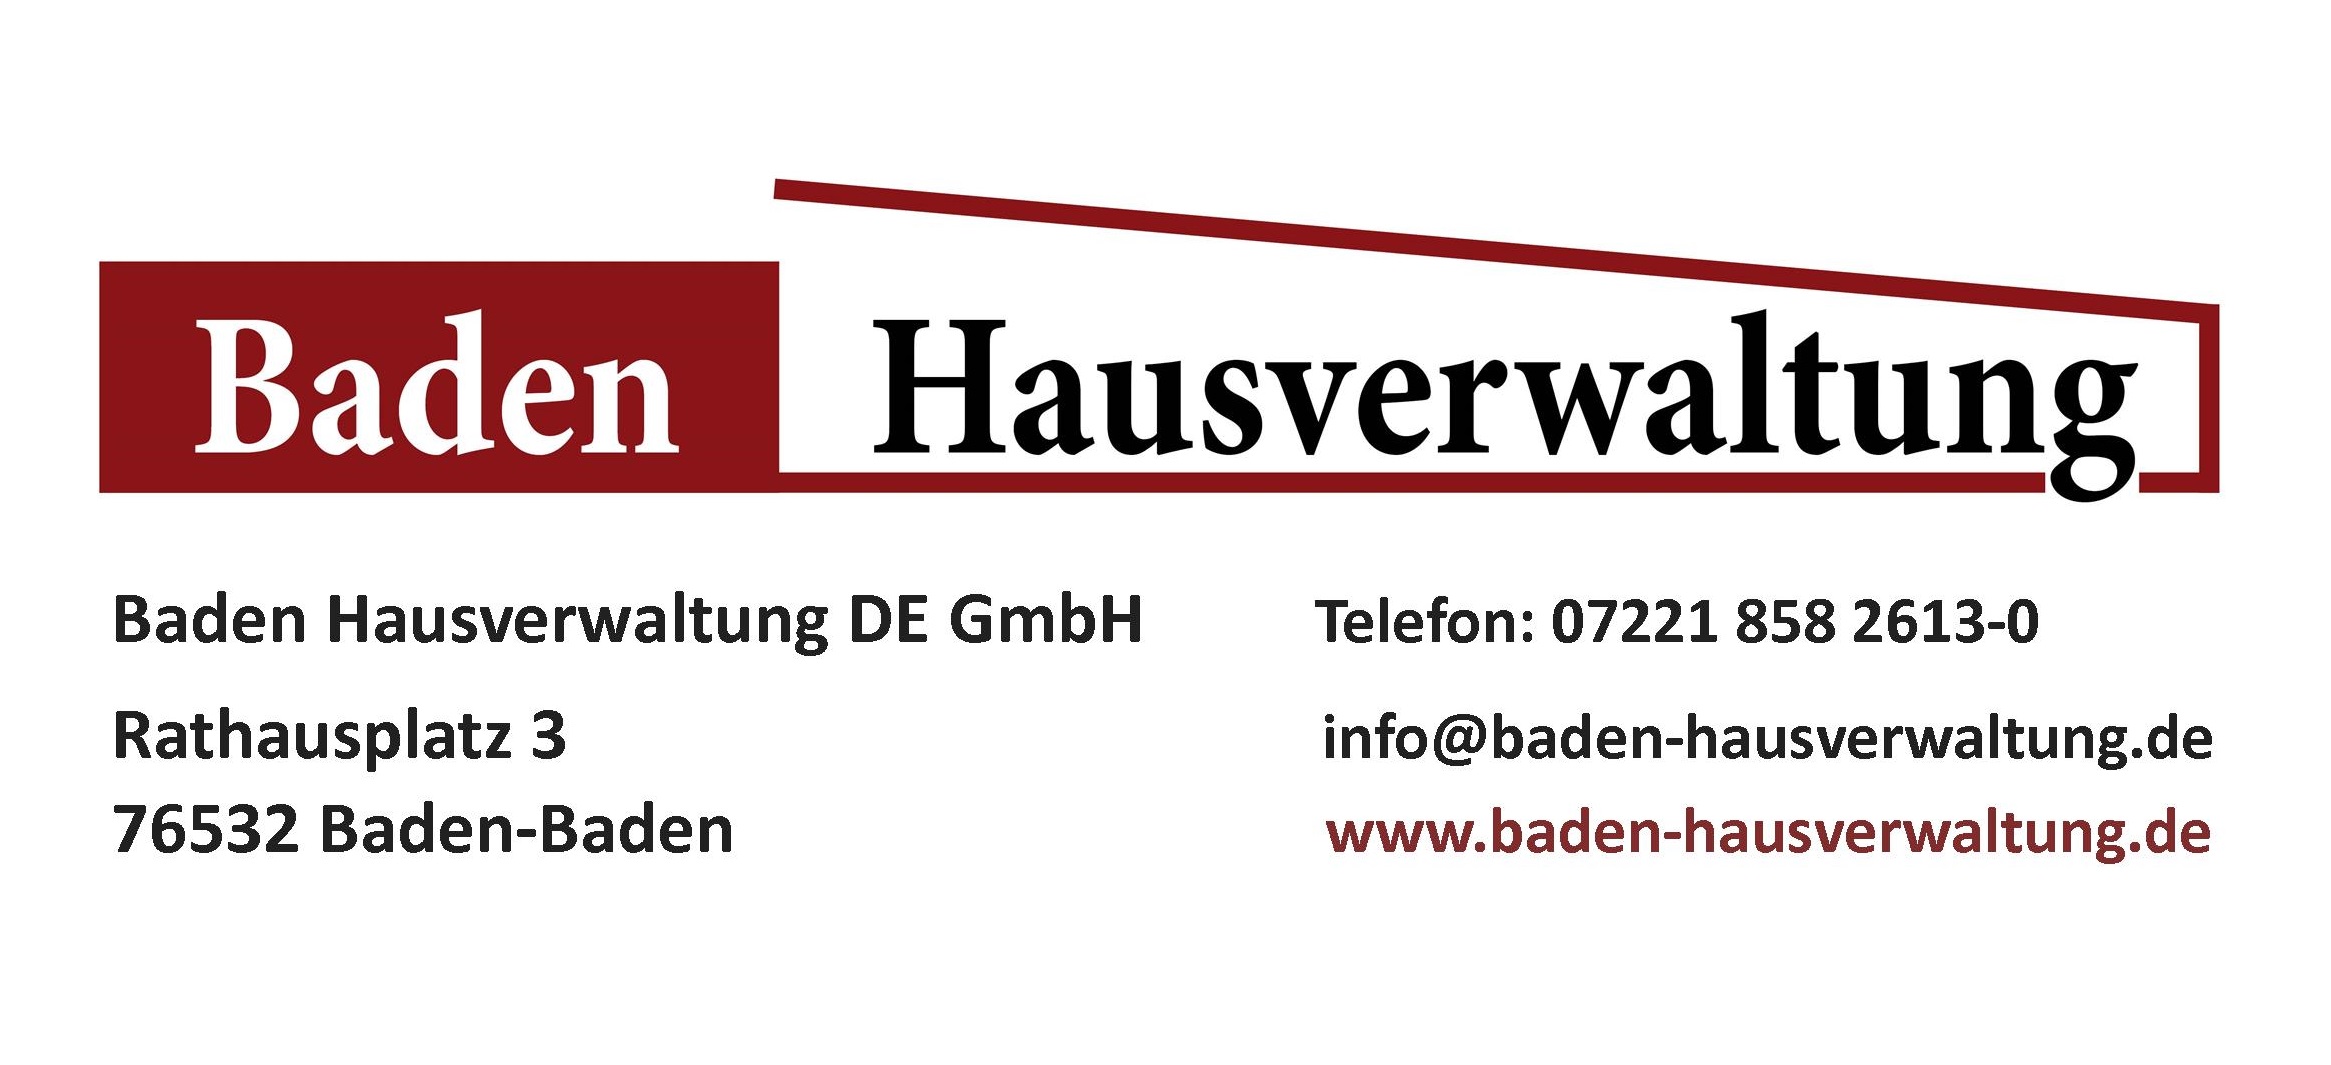 www.baden-hausverwaltung.de